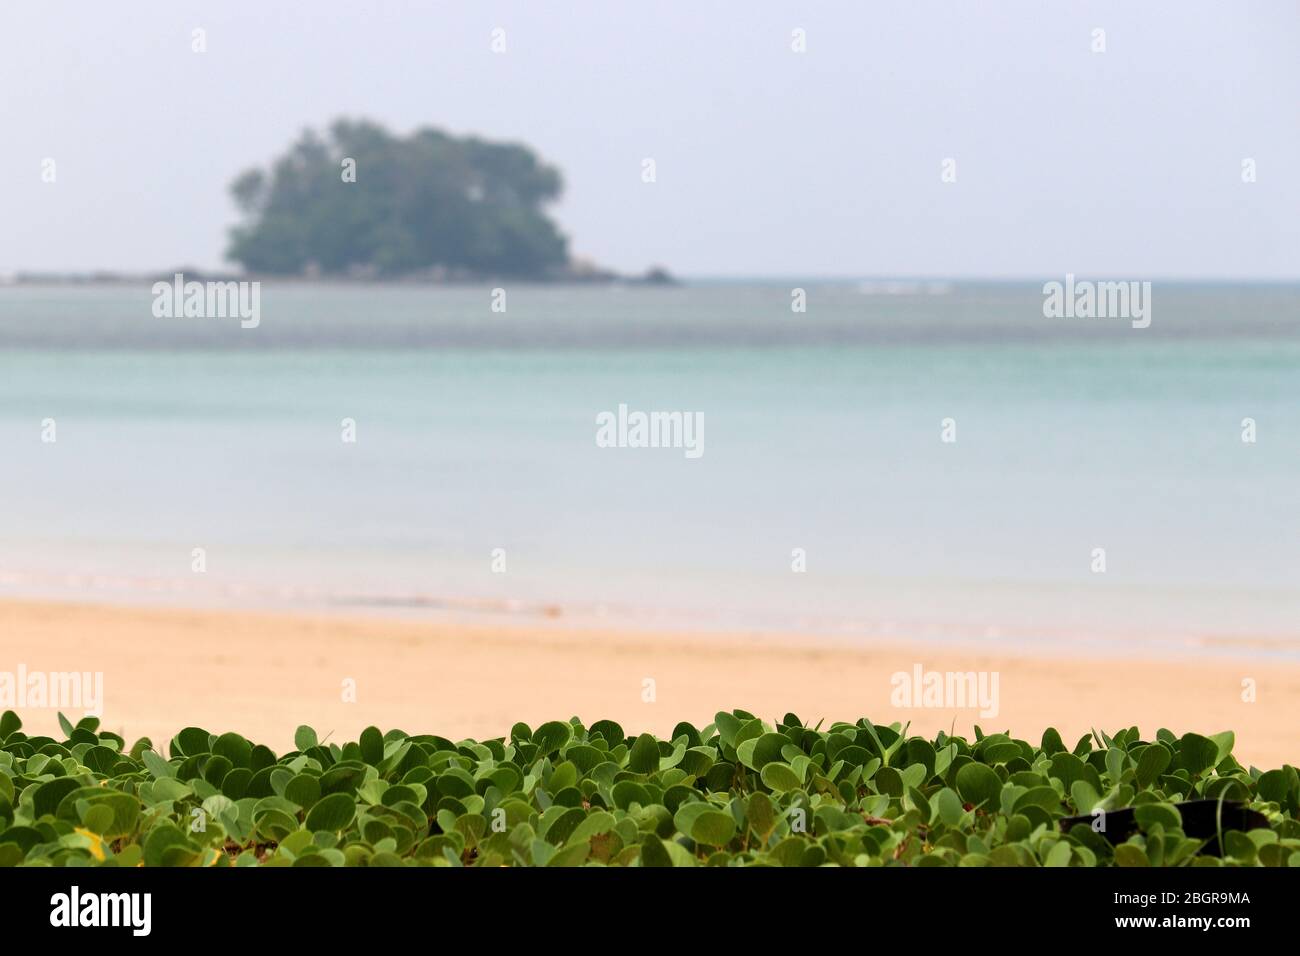 Plage tropicale vide avec plantes vertes, vue sur la mer bleue et l'île, point de mire sélectif. Concept de loisirs et de détente sur une nature paradisiaque Banque D'Images